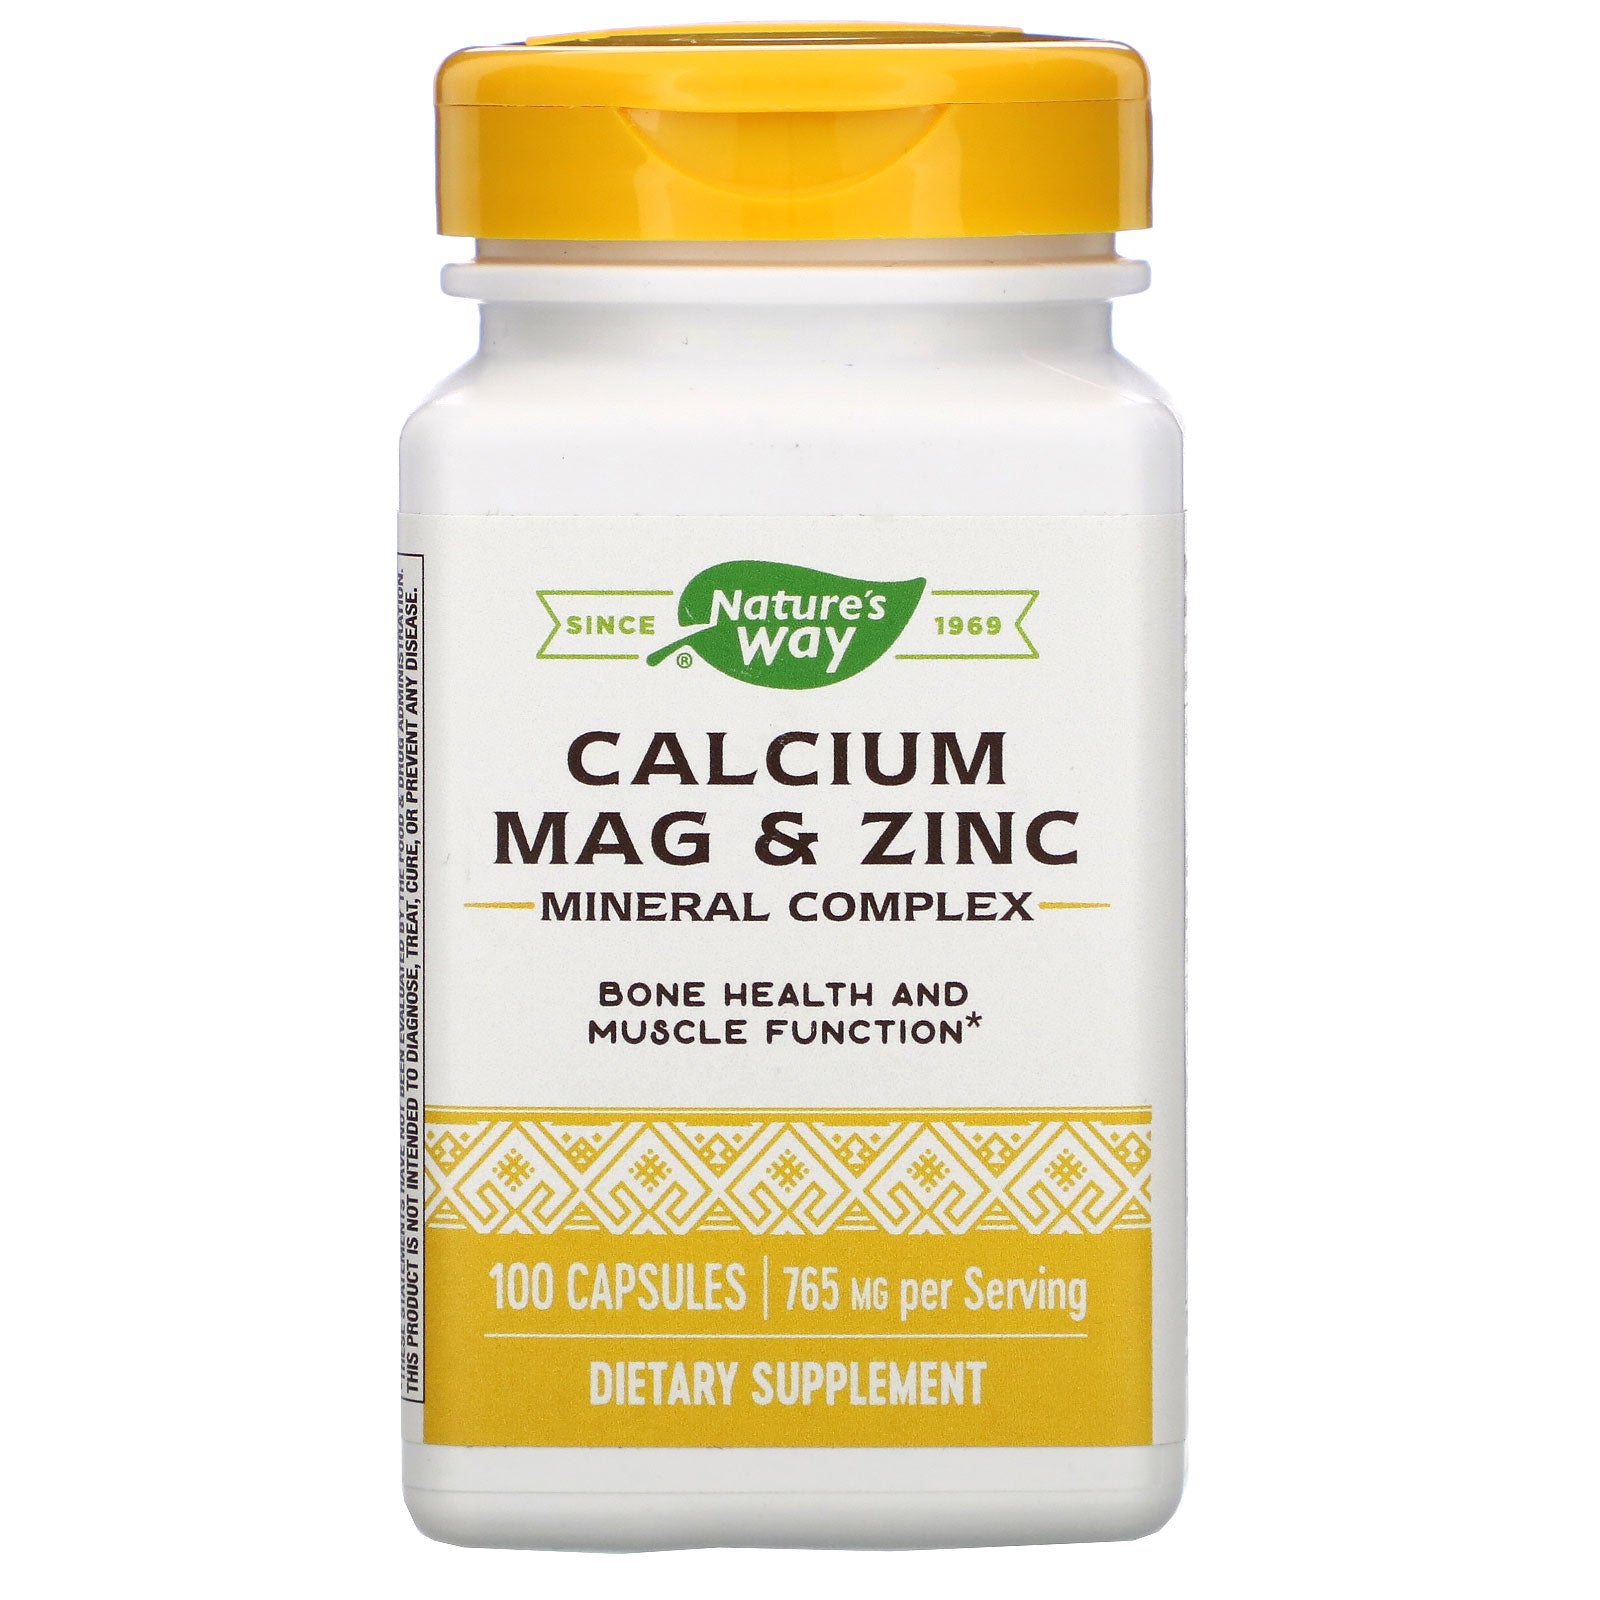 Nature's Way, Calcium Mag & Zinc Mineral Complex, 765 mg, 100 Capsules